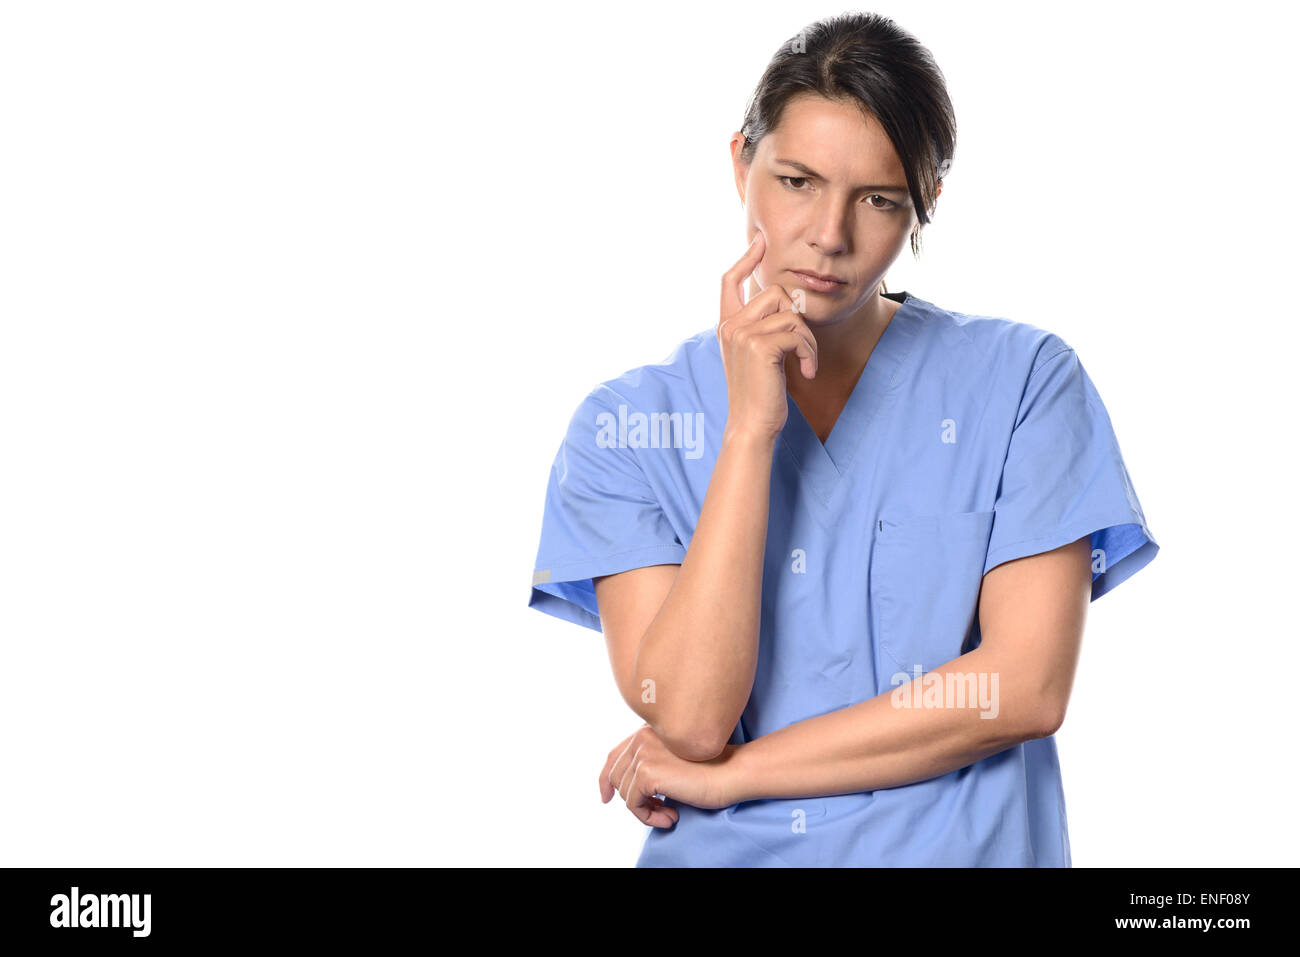 Mutlos junge Ärztin oder Krankenschwester tragen blaue chirurgische Peelings starrte mürrisch auf den Boden mit einem nachdenklichen Ausdruck ist Stockfoto